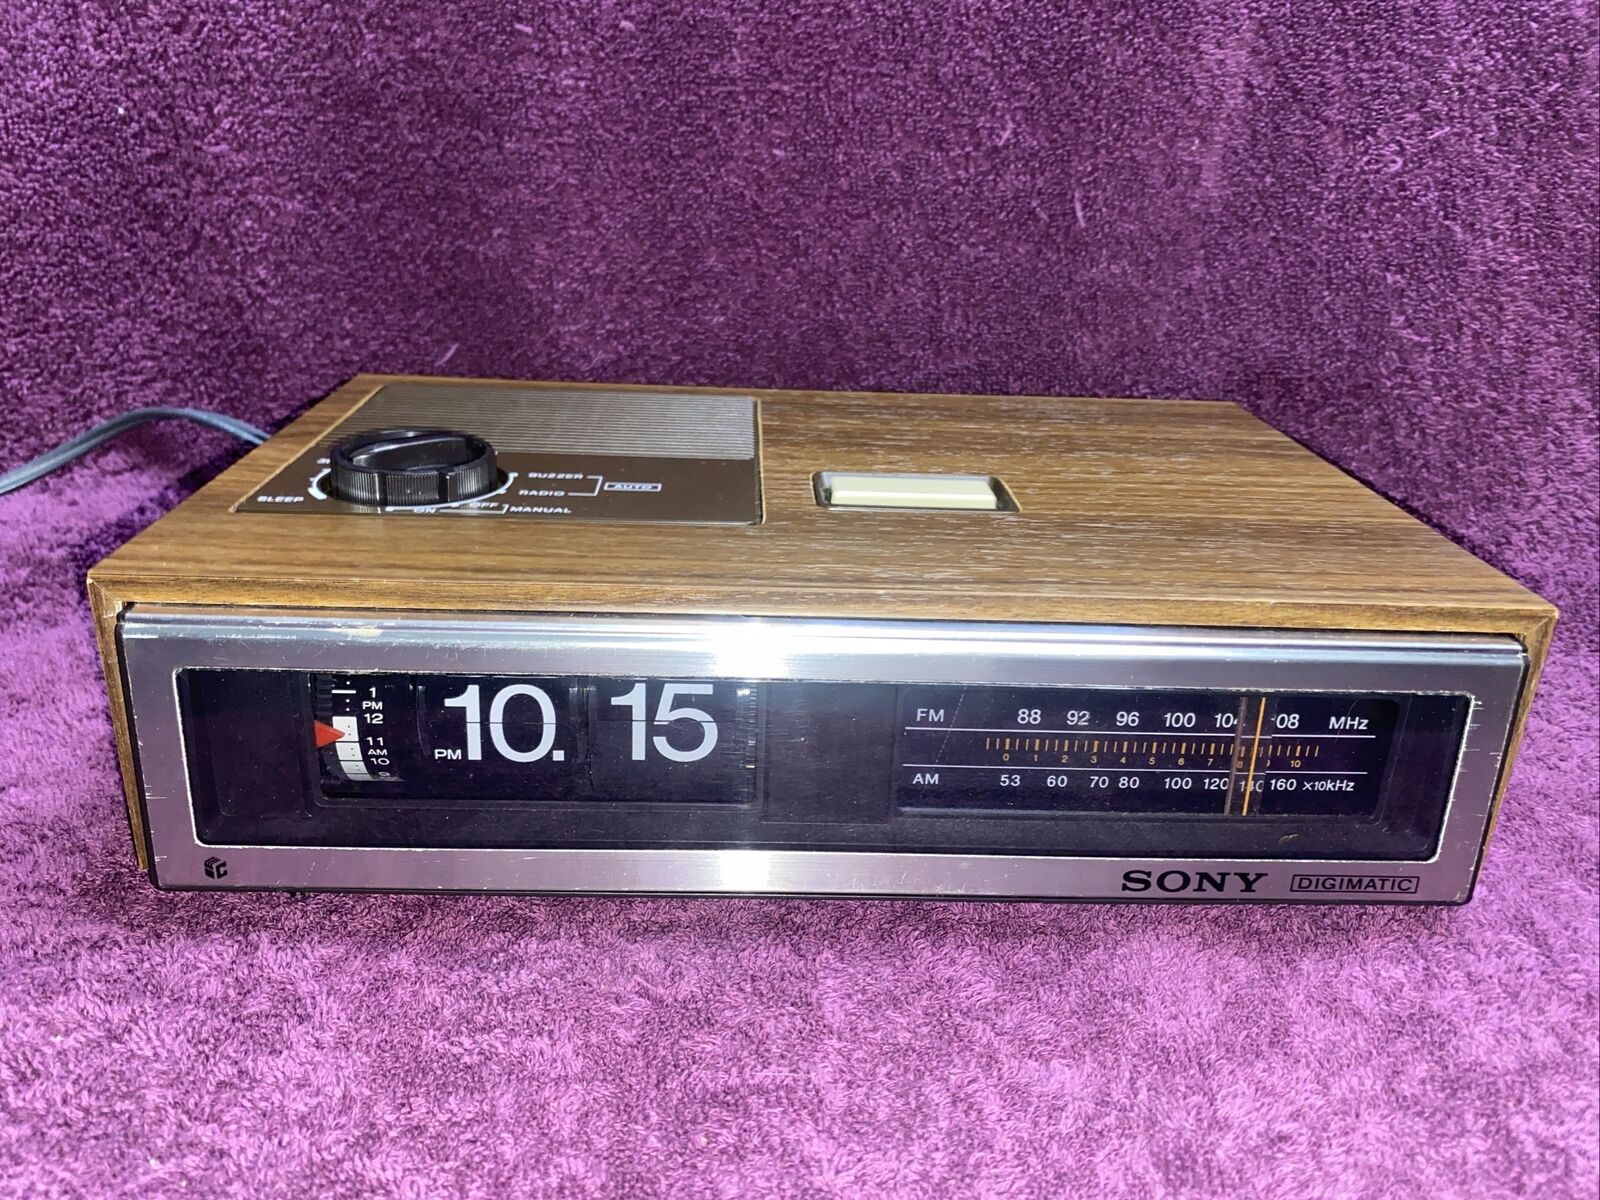 Sony ICF-C670W Digimatic AM FM Flip Clock radio Vintage WORKING